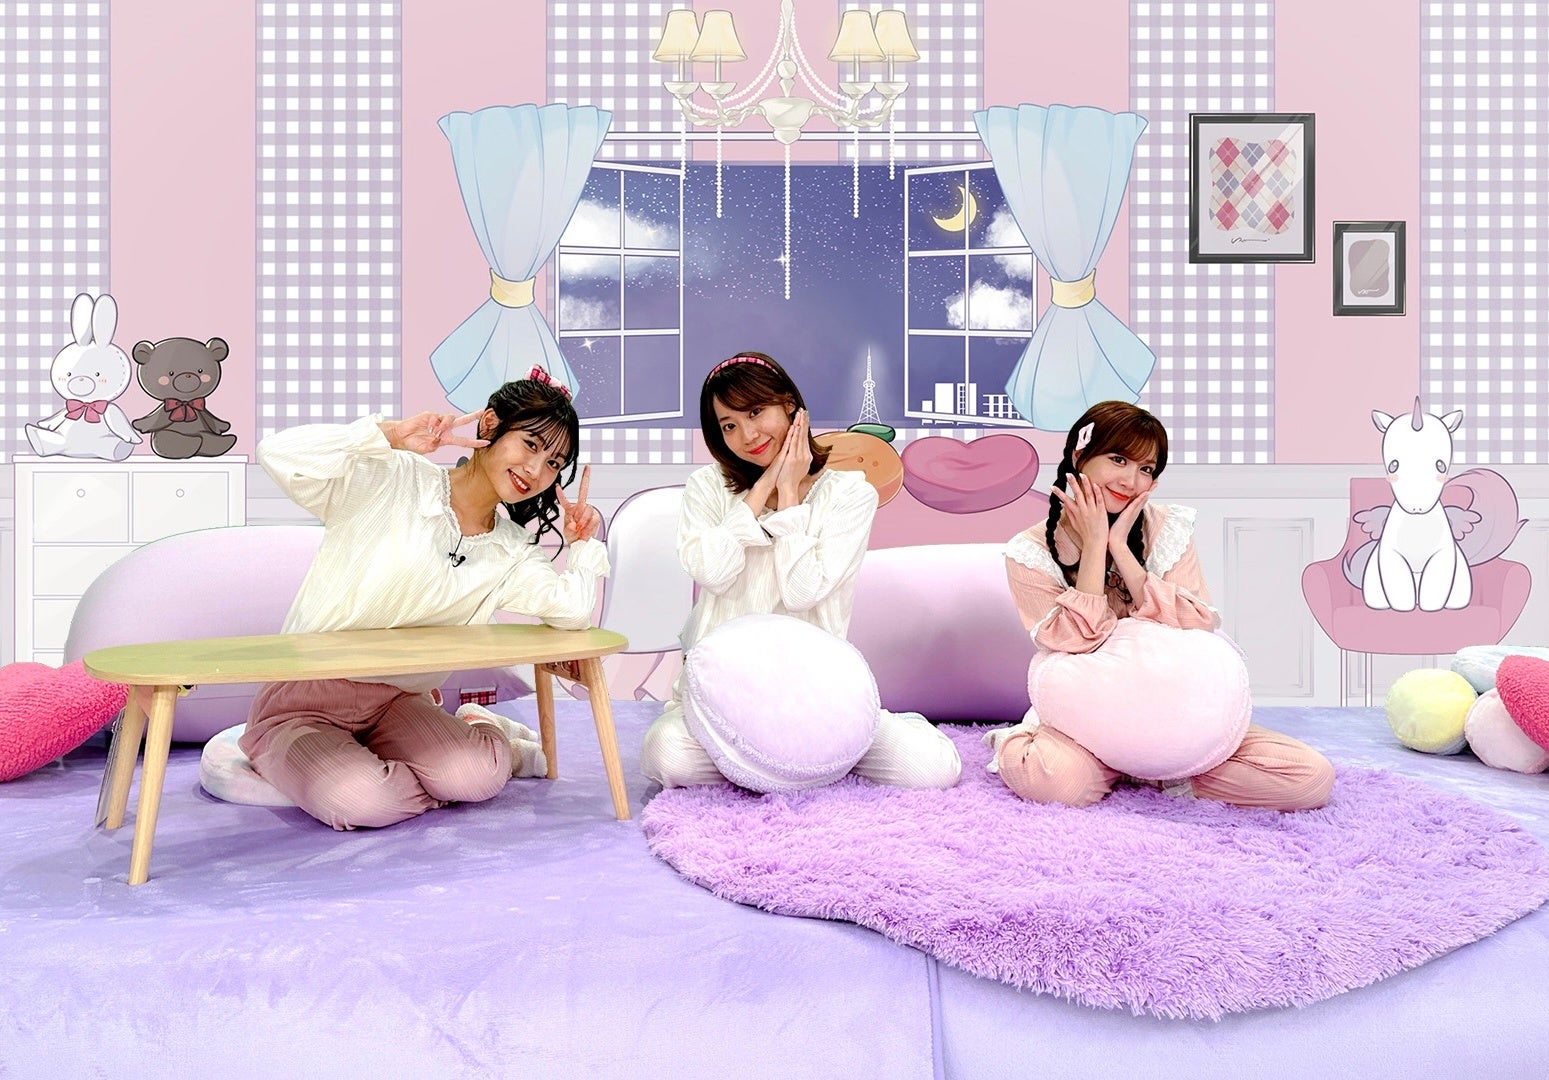 SKE48の地上波冠番組”SKE48の未完全TV”が6月11日(日)からリニューアル！アイドルの運転で順位を競うバラエティ企画のほか、スタジオには大胆なパジャマ姿のメンバーが登場！